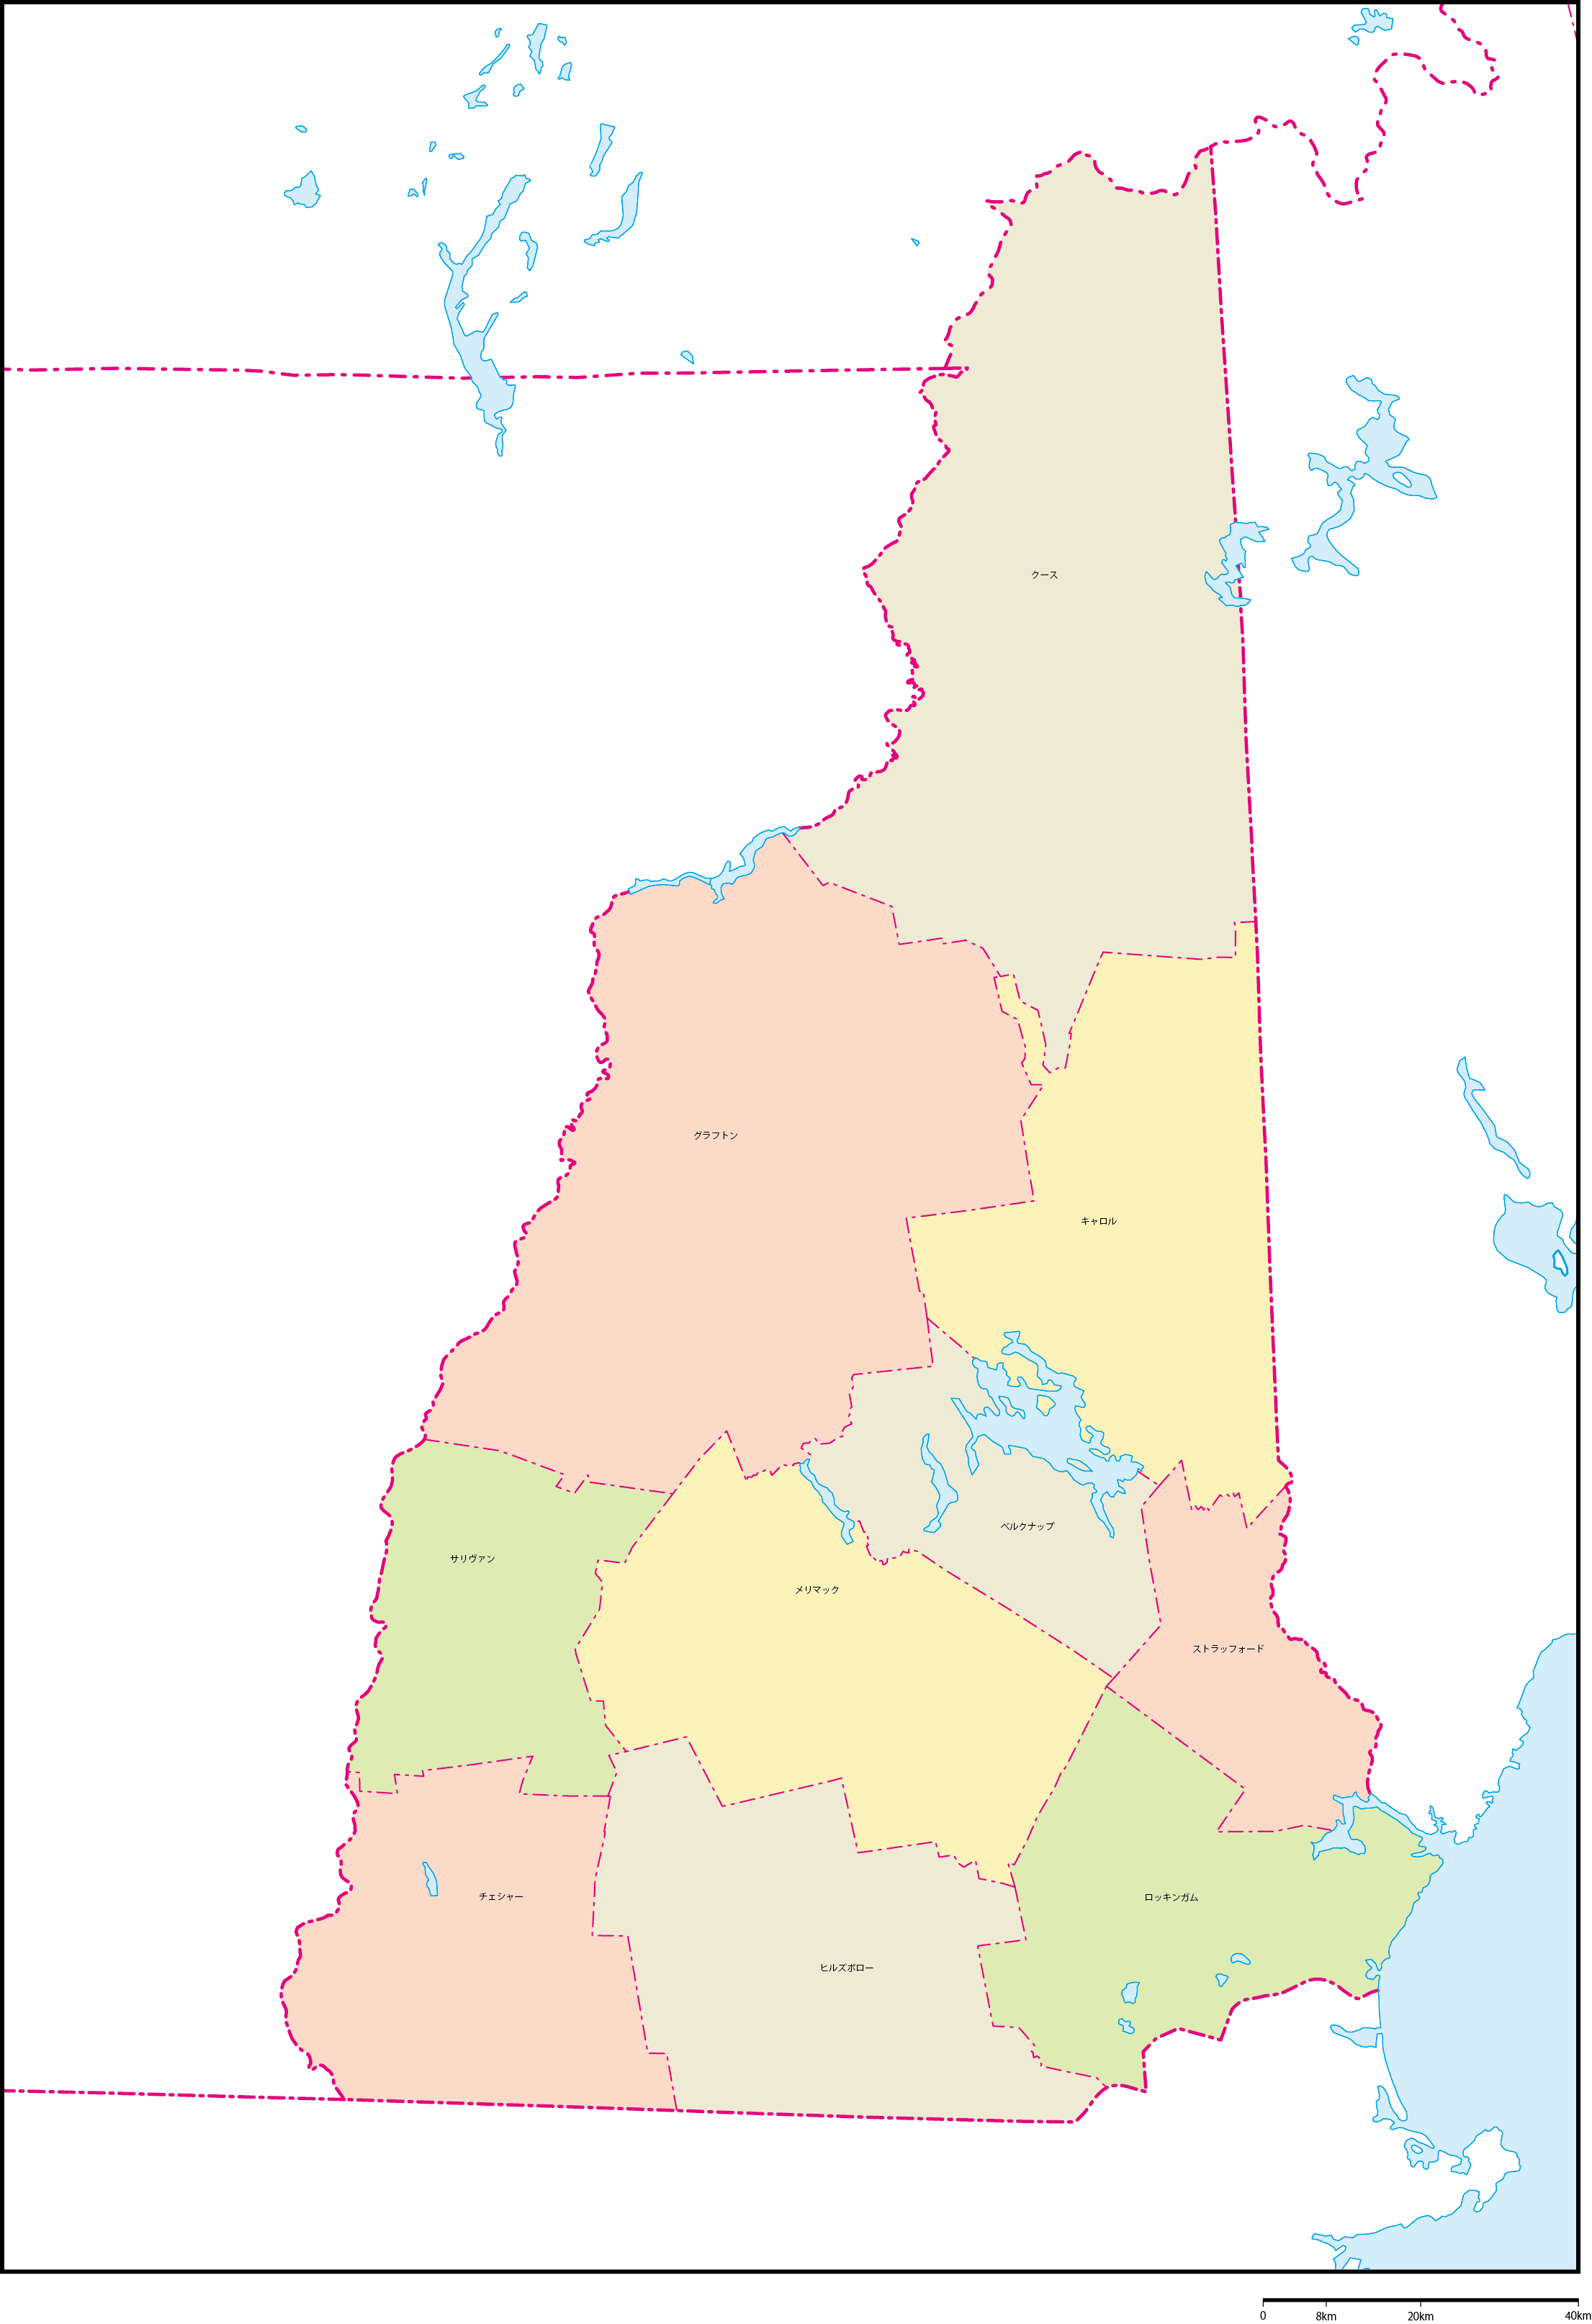 ニューハンプシャー州郡色分け地図郡名あり(日本語)フリーデータの画像